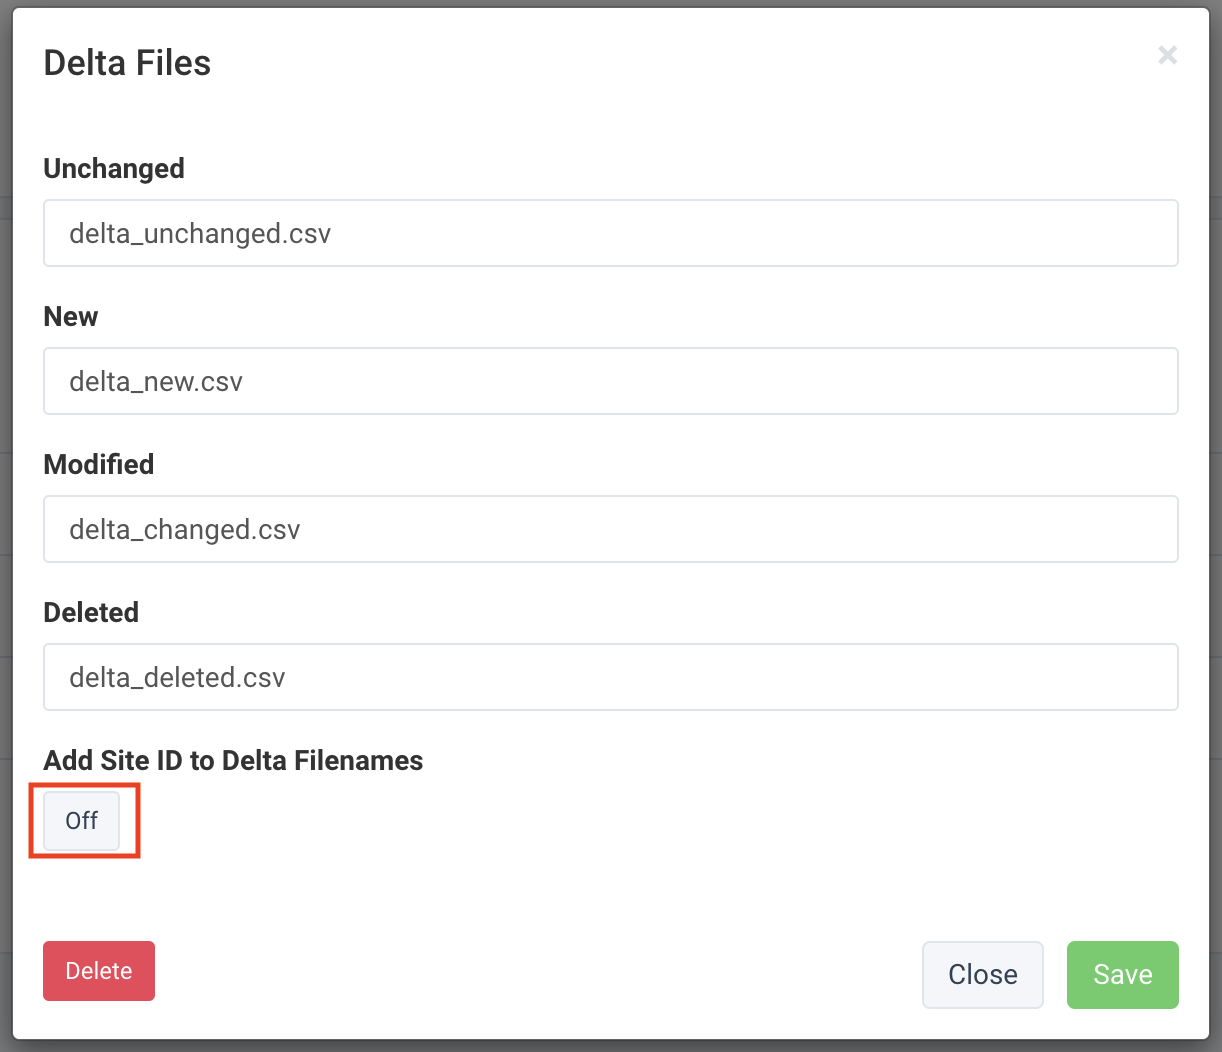 Add Site ID to Delta Filenames